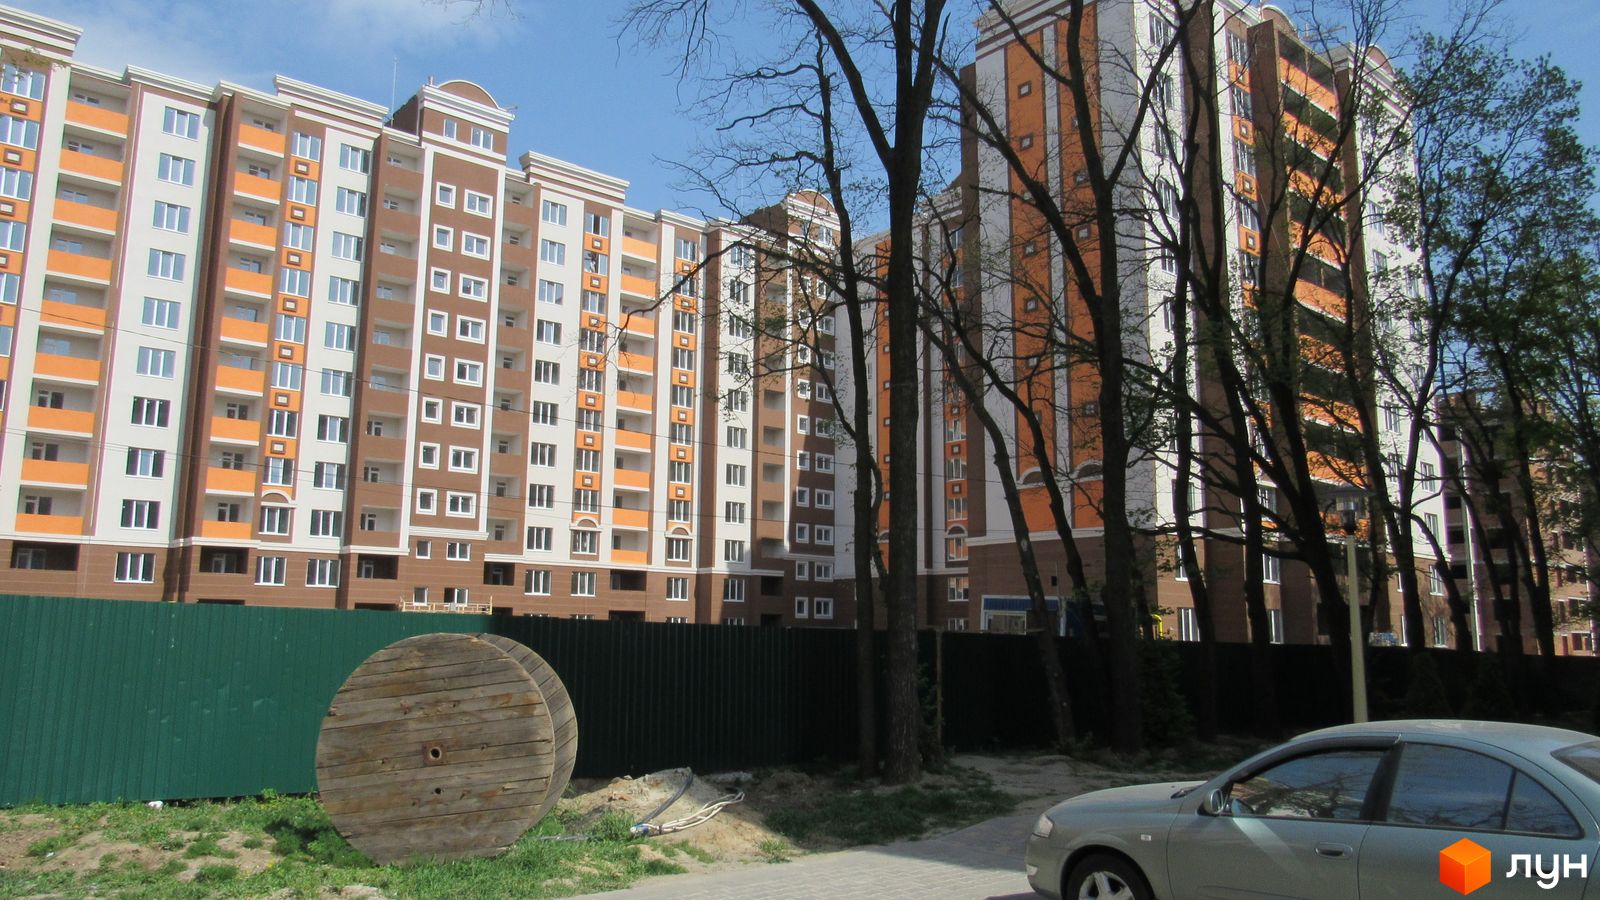 Моніторинг будівництва ЖК Петрівський квартал - Ракурс 7, квітень 2017